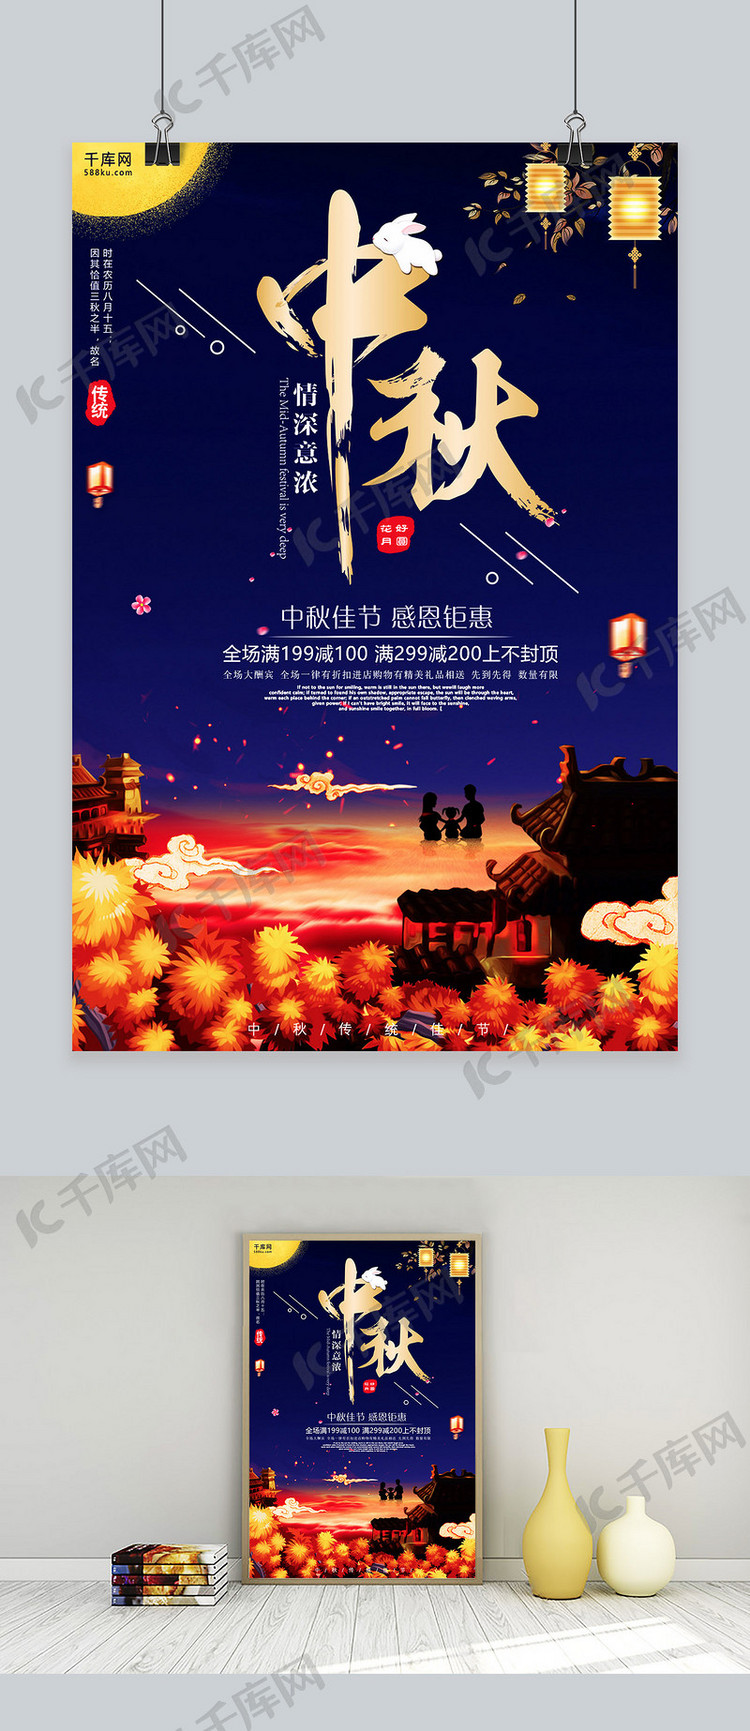 千库网原创唯美中国传统中秋节海报